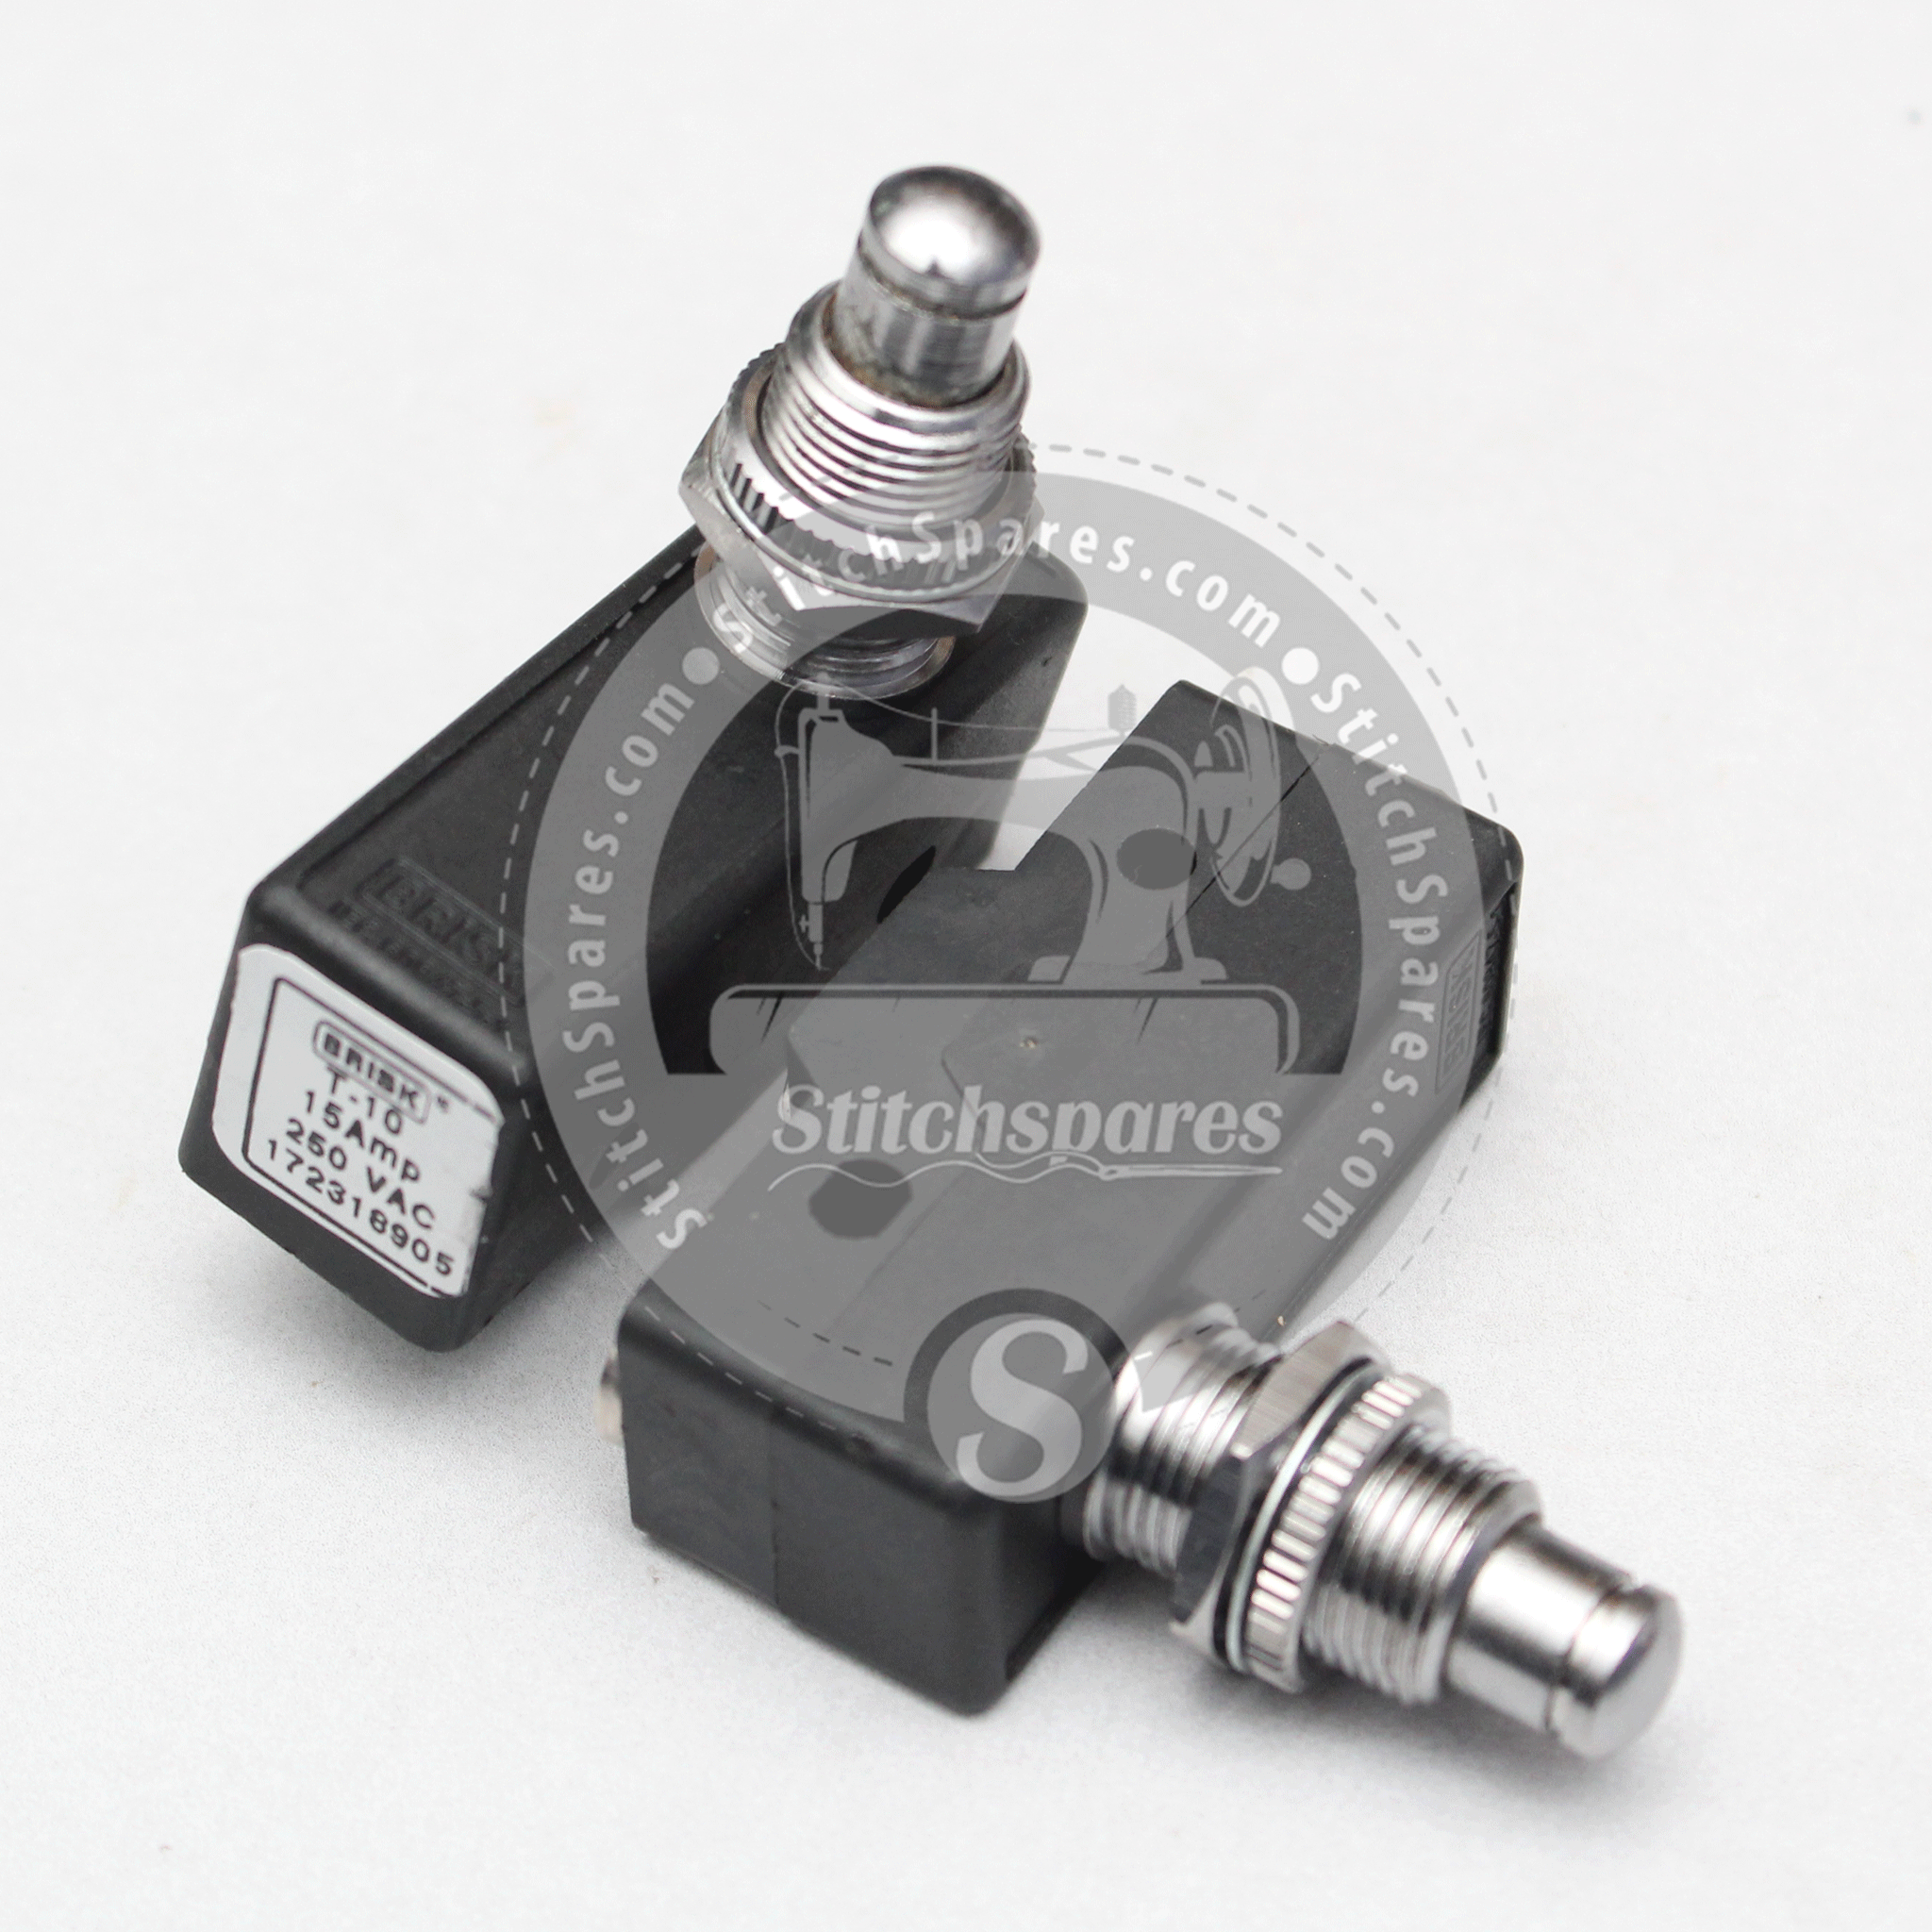 Prensa de vapor con interruptor de pedal (15 amperios)